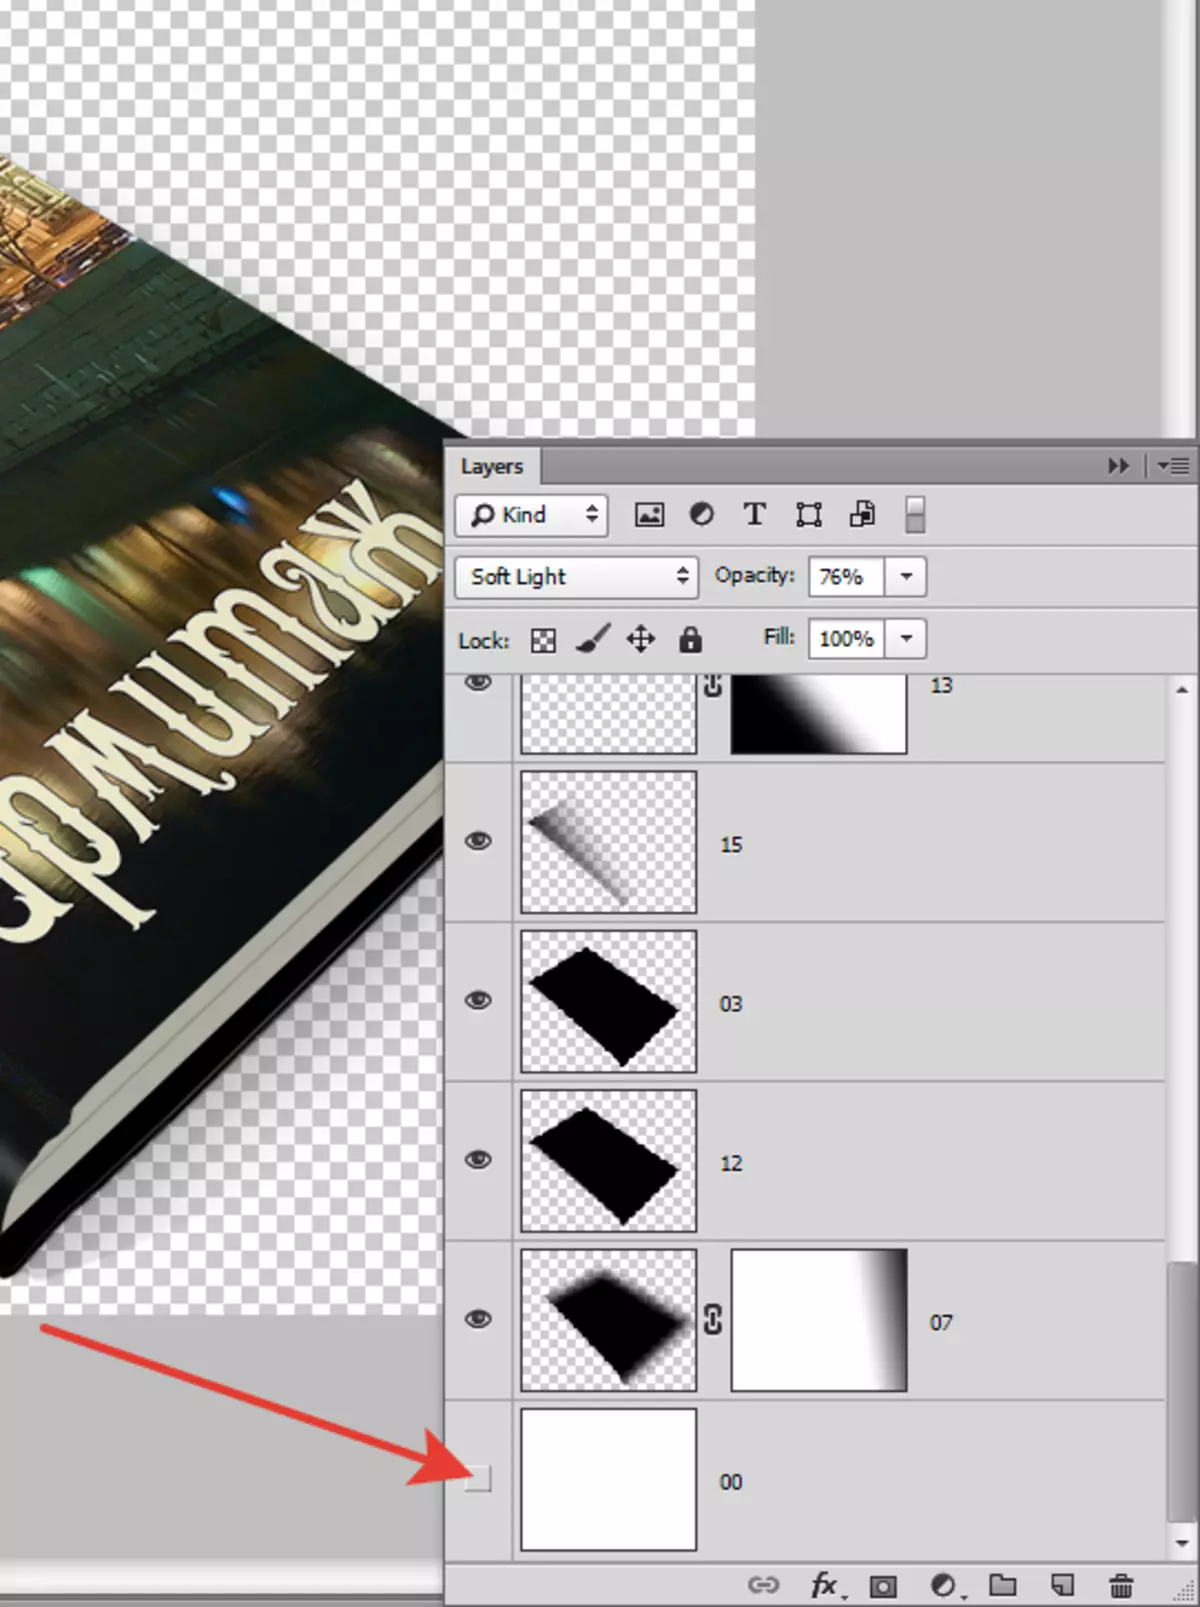 สร้างปกหนังสือสำหรับหนังสือใน Photoshop